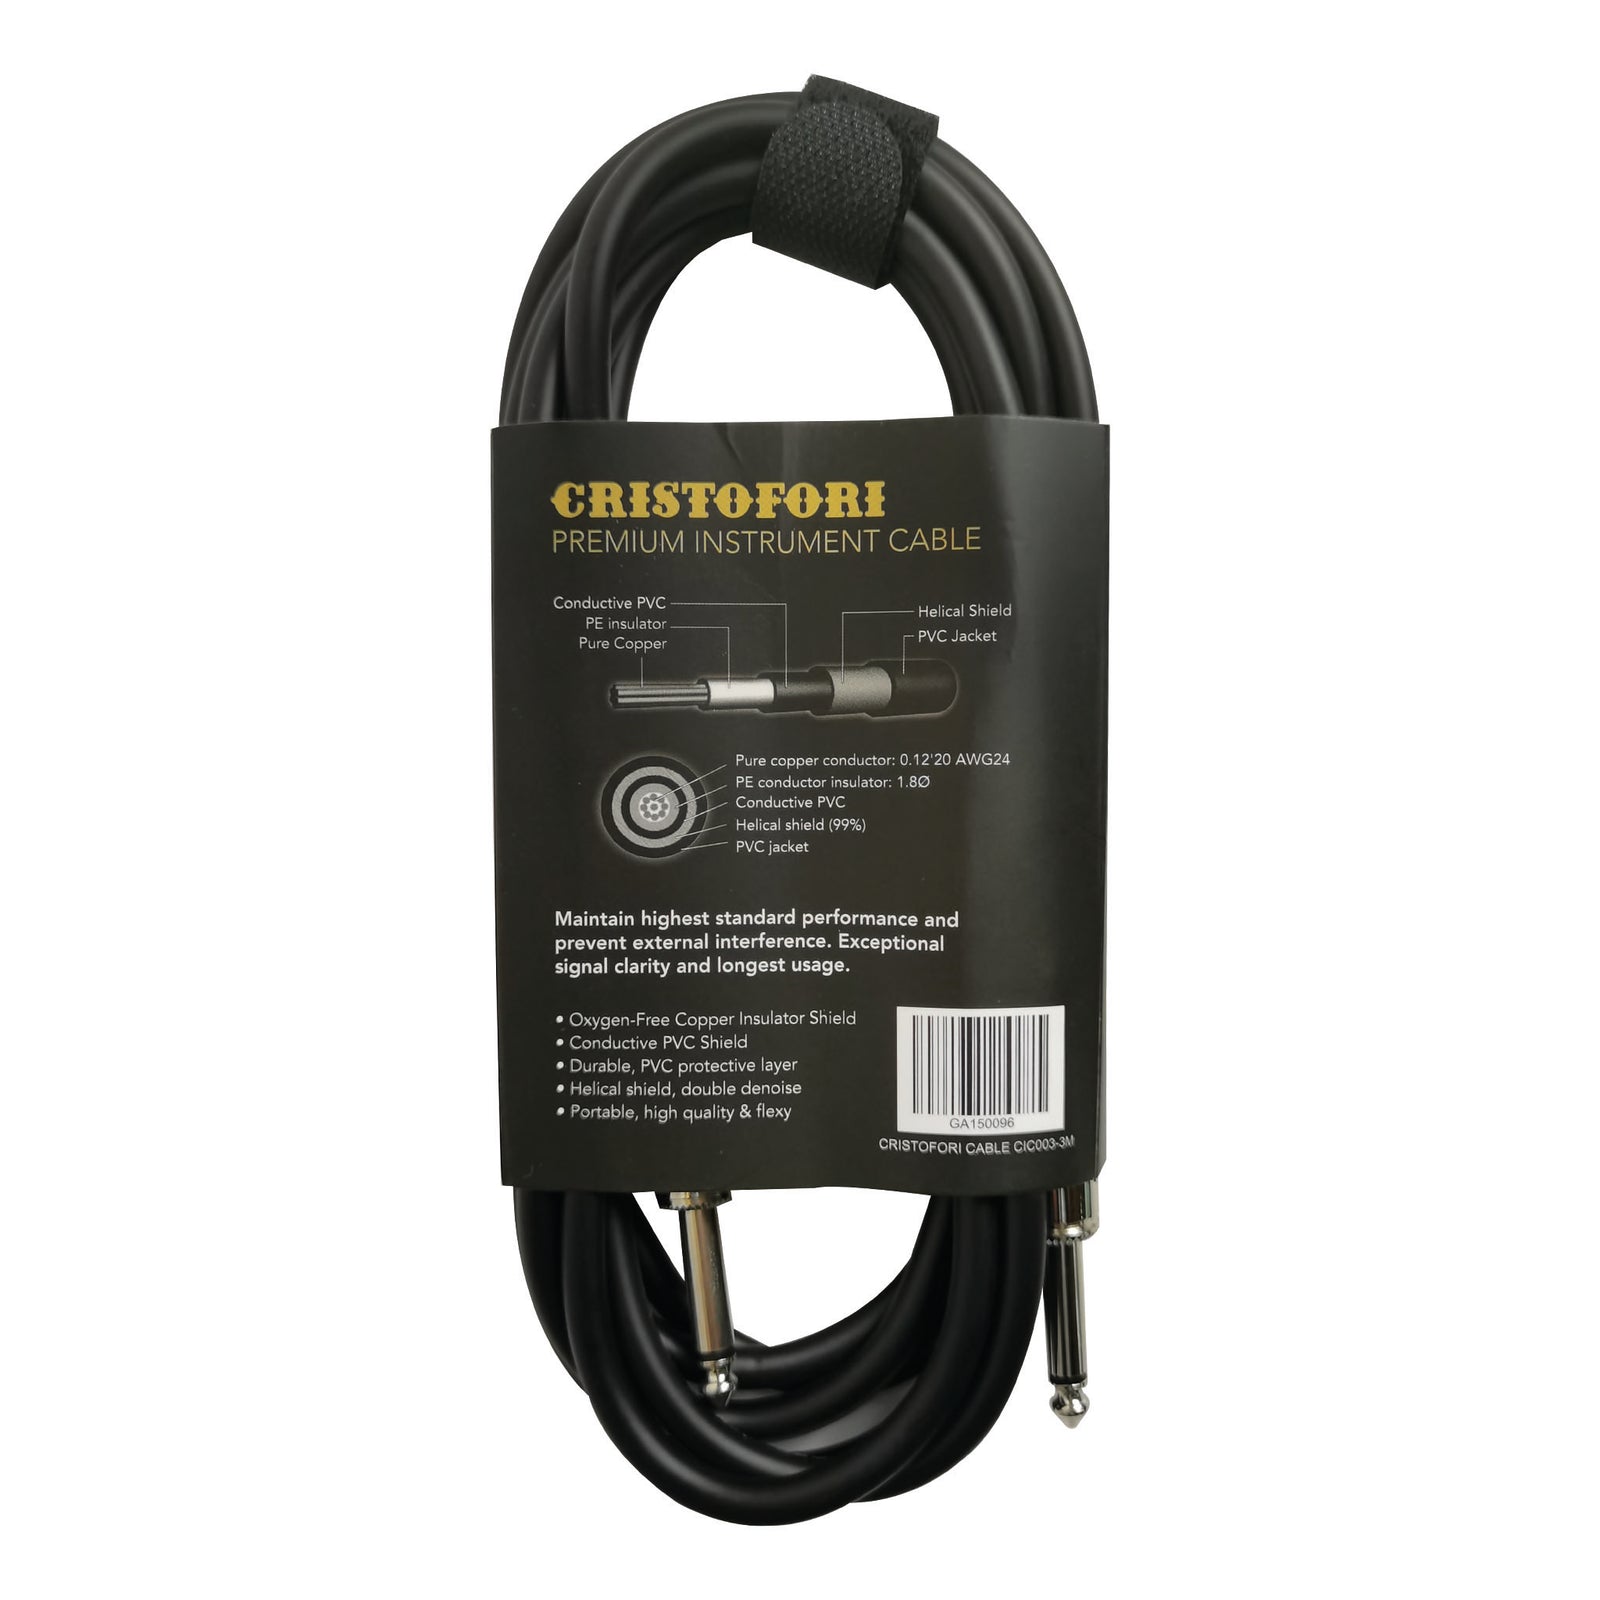 Cristofori cable CIC003 - 3M